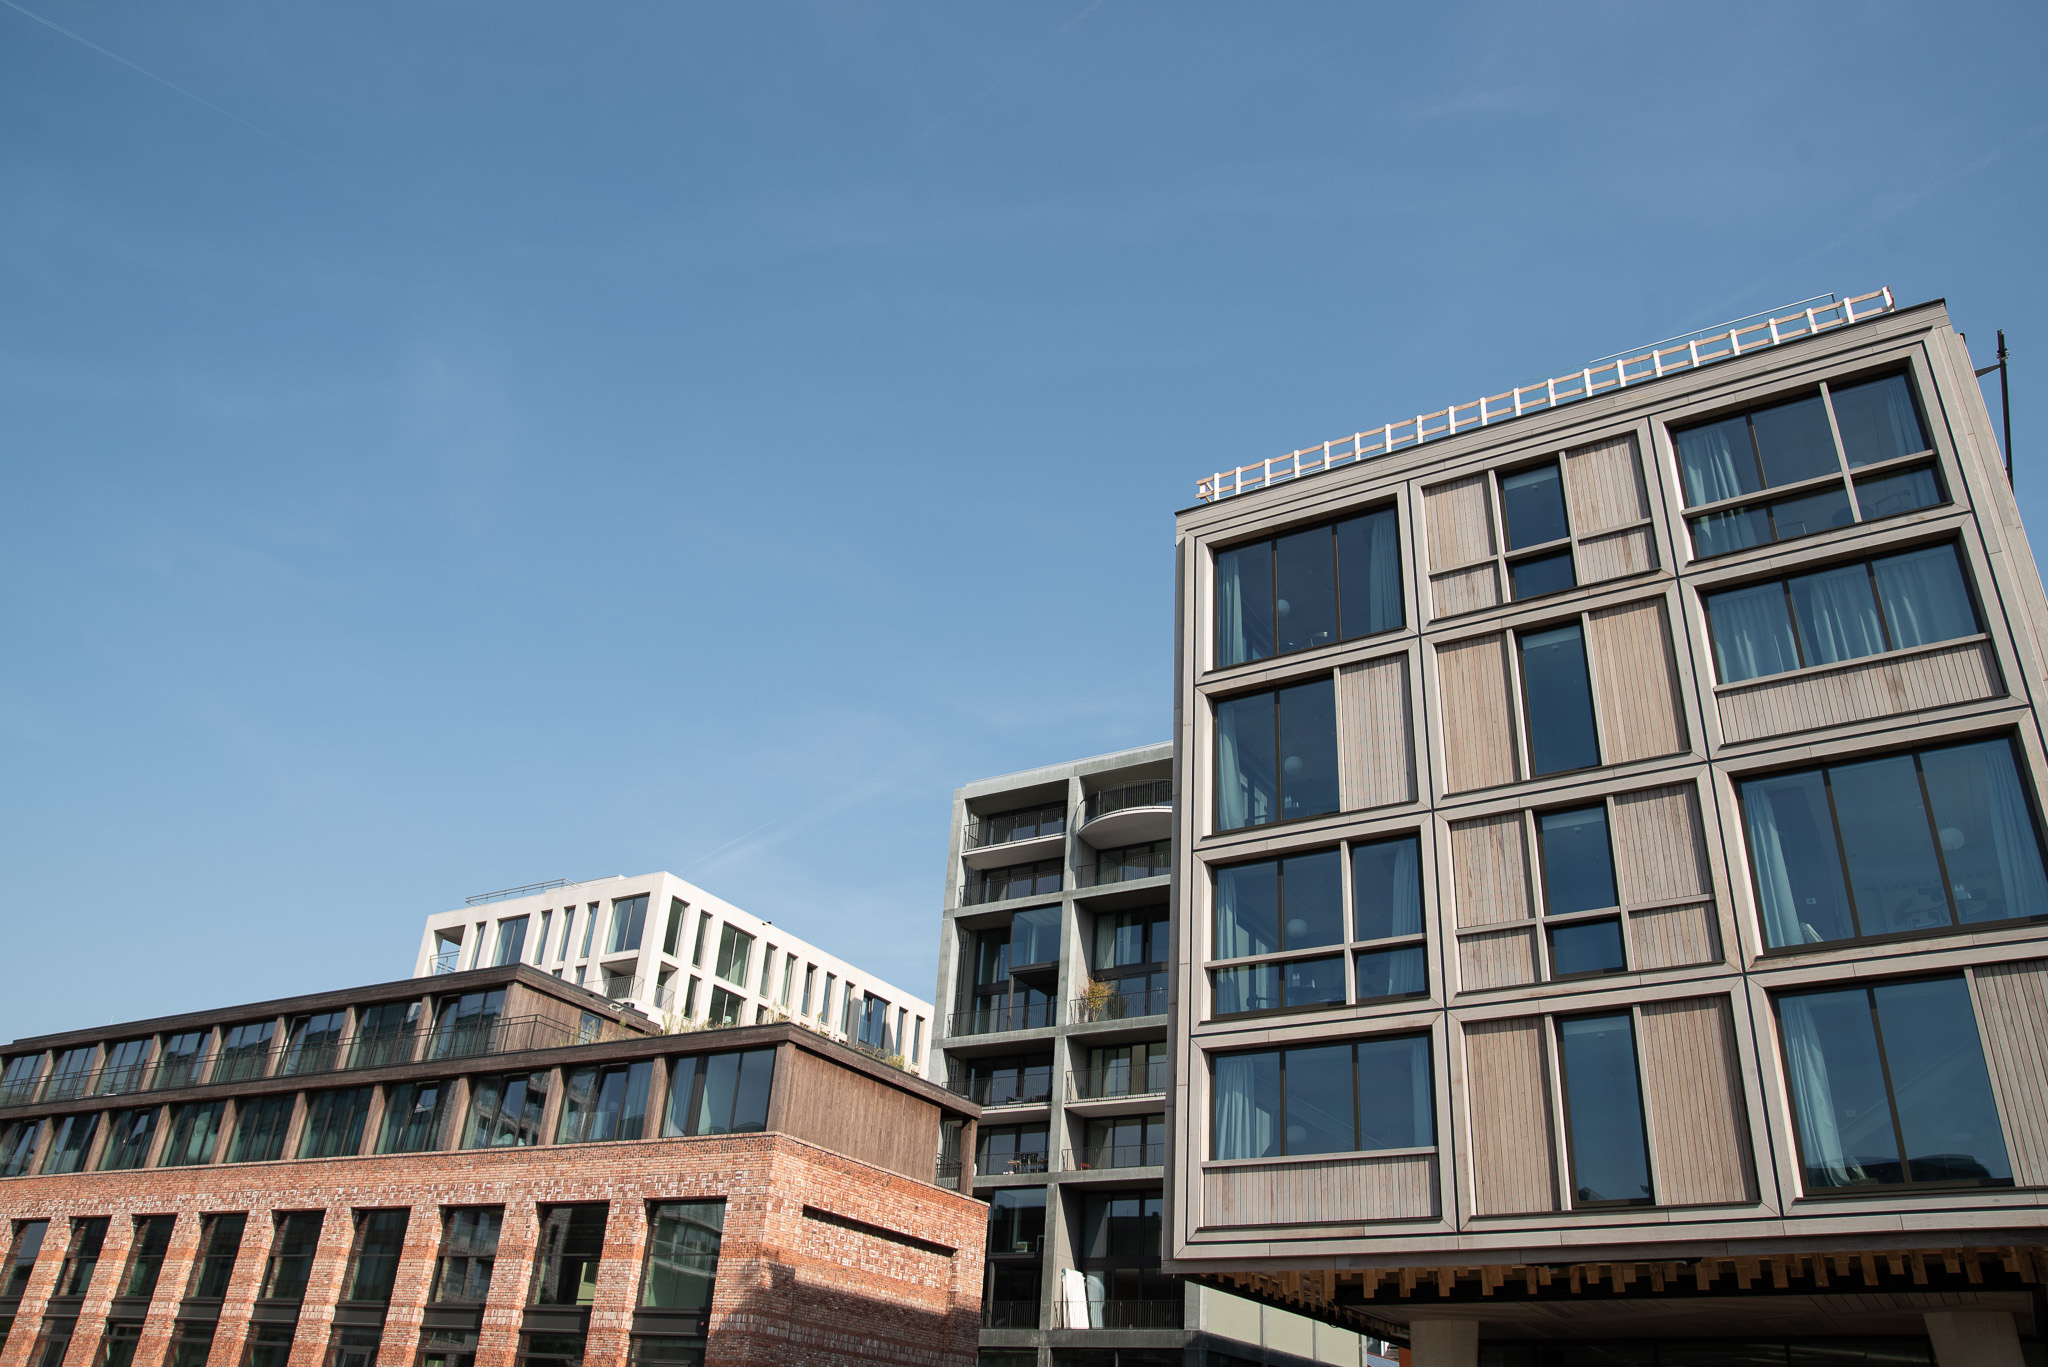 Bob W opent locatie met short stay appartementen in Amsterdam Noord